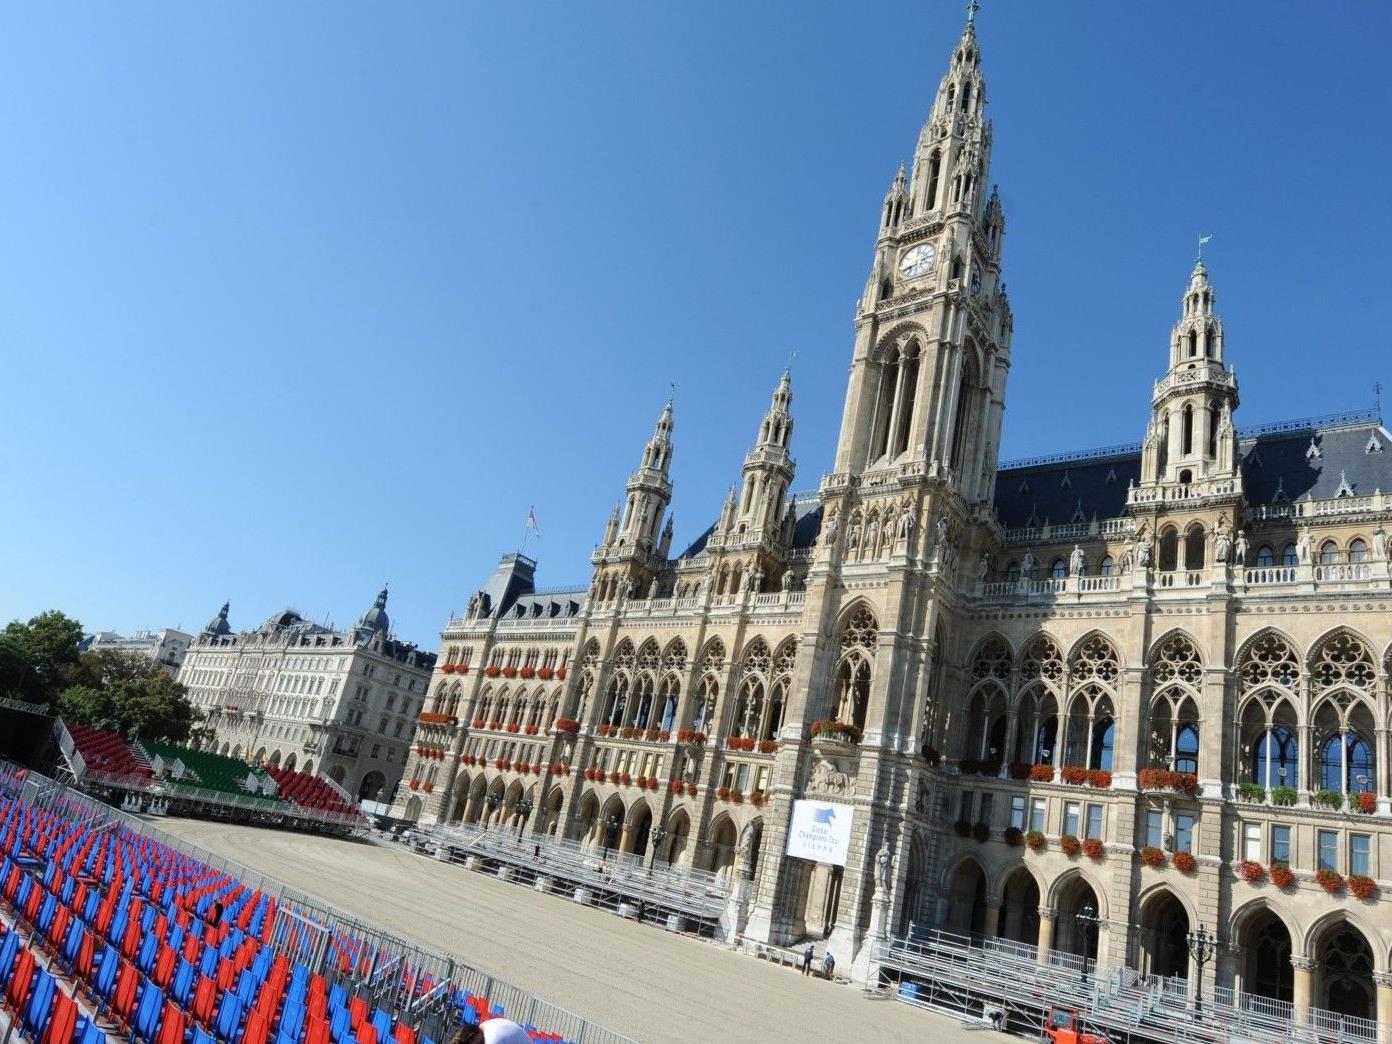 Am Donnerstag starten die Vienna Masters 2012 auf dem Wiener Rathausplatz.